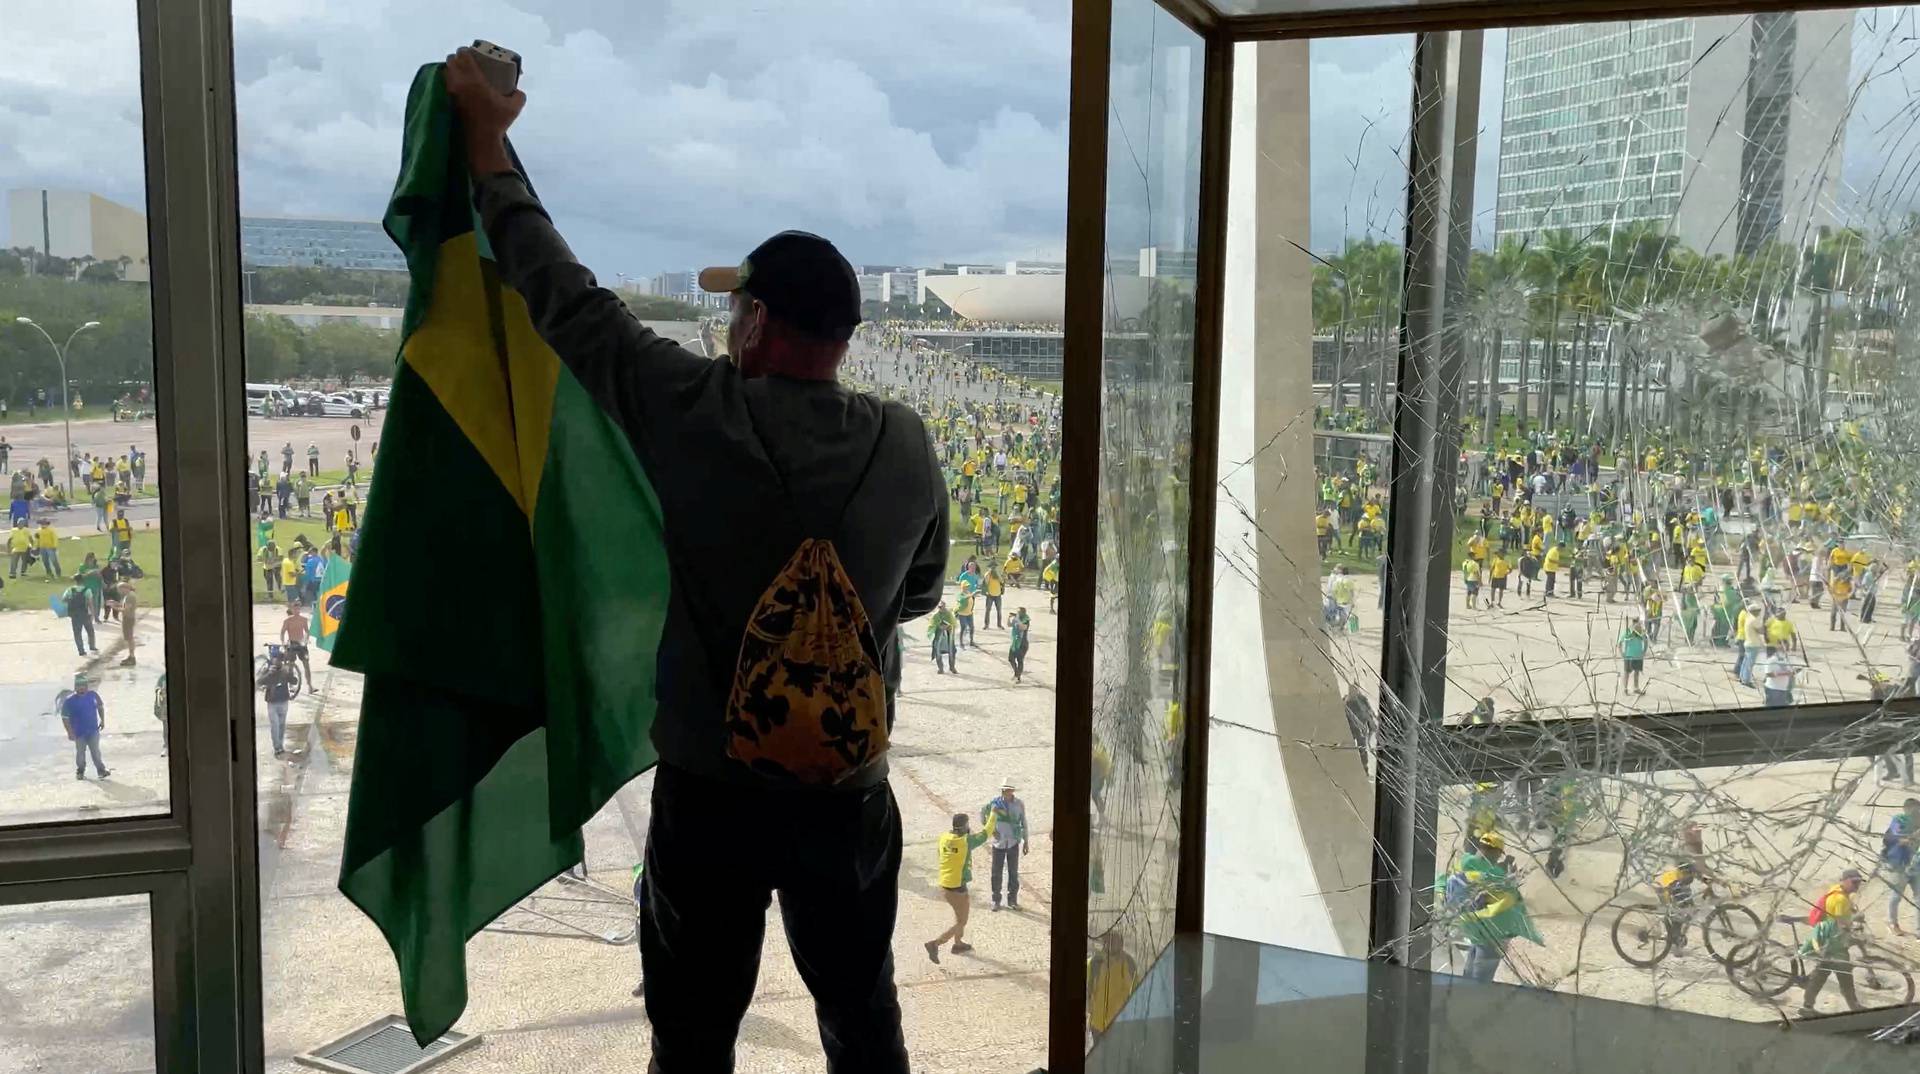 Supporters of Brazil's former President Jair Bolsonaro take part in a protest against President Luiz Inacio Lula da Silva in Brasilia